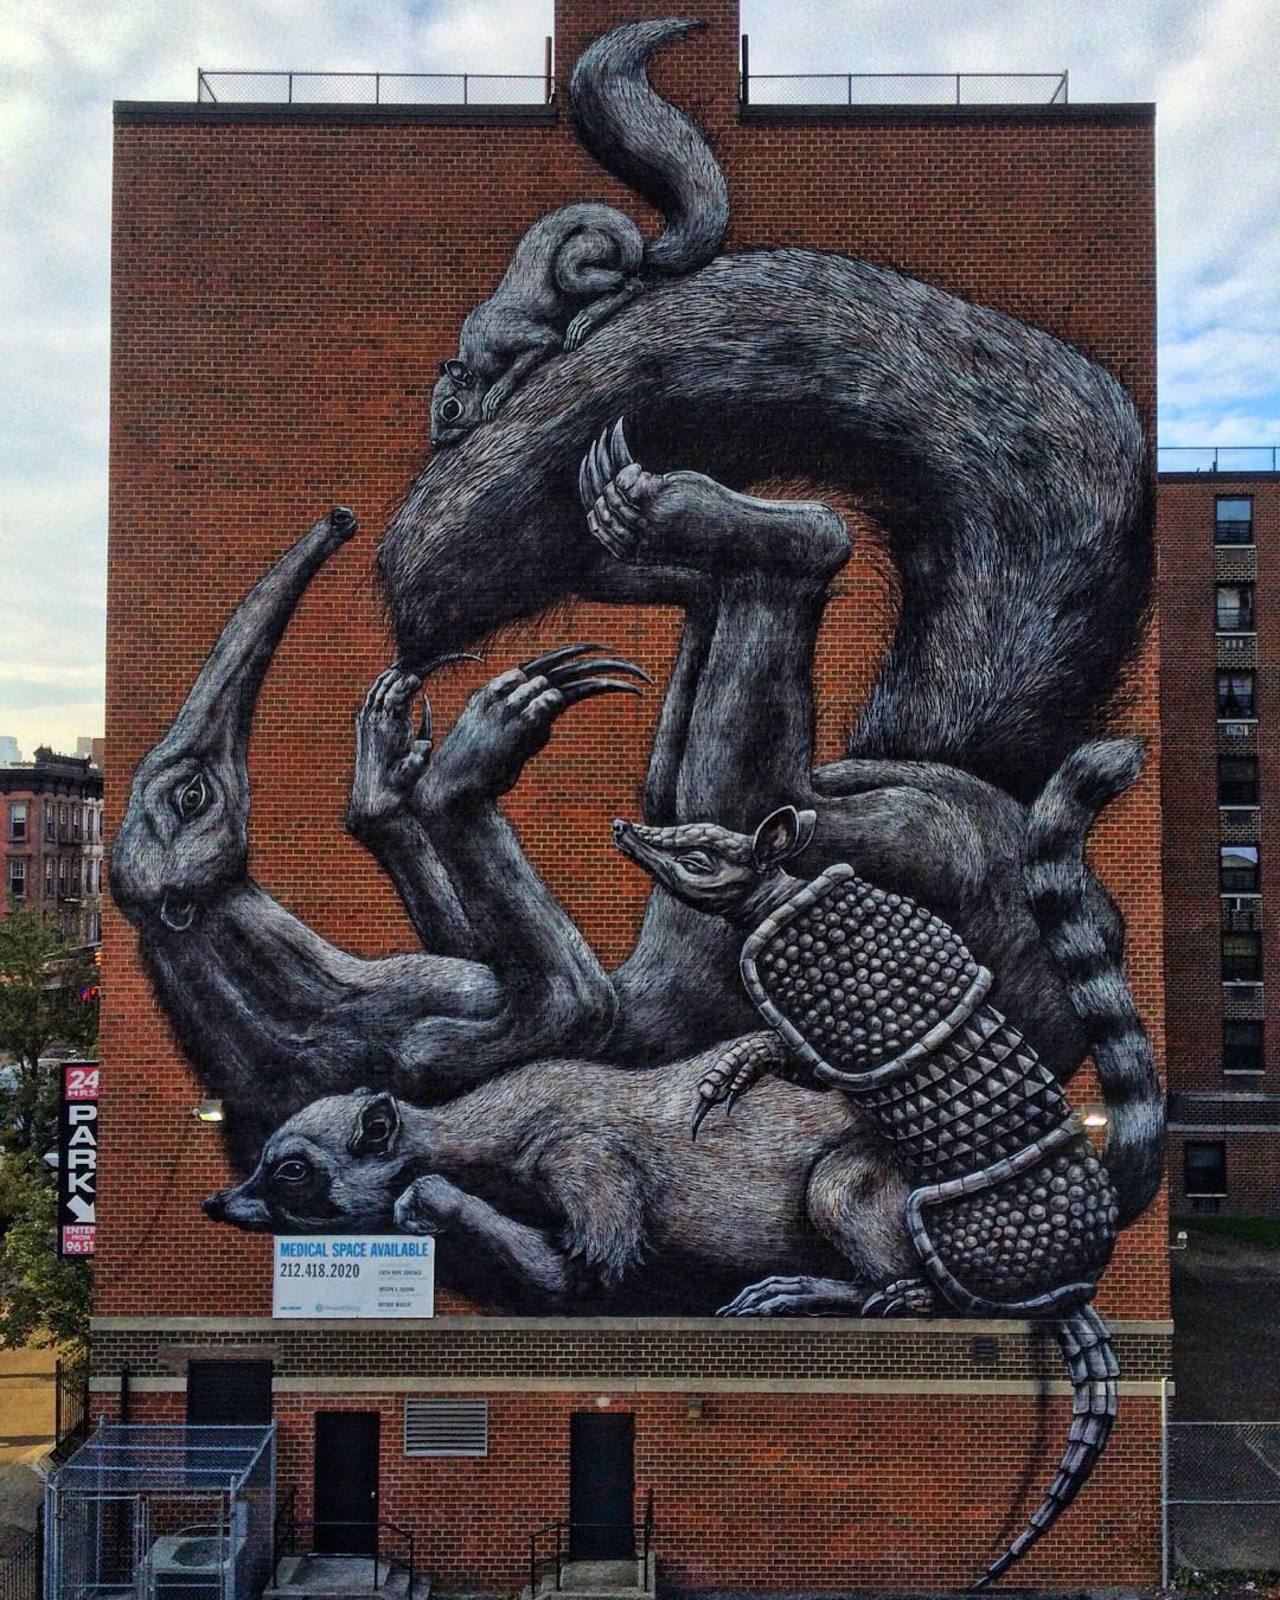 ROA unveils a new mural in East Harlem, NYC for Monument Art. #StreetArt #Graffiti #Mural http://t.co/V9kwntNSBP